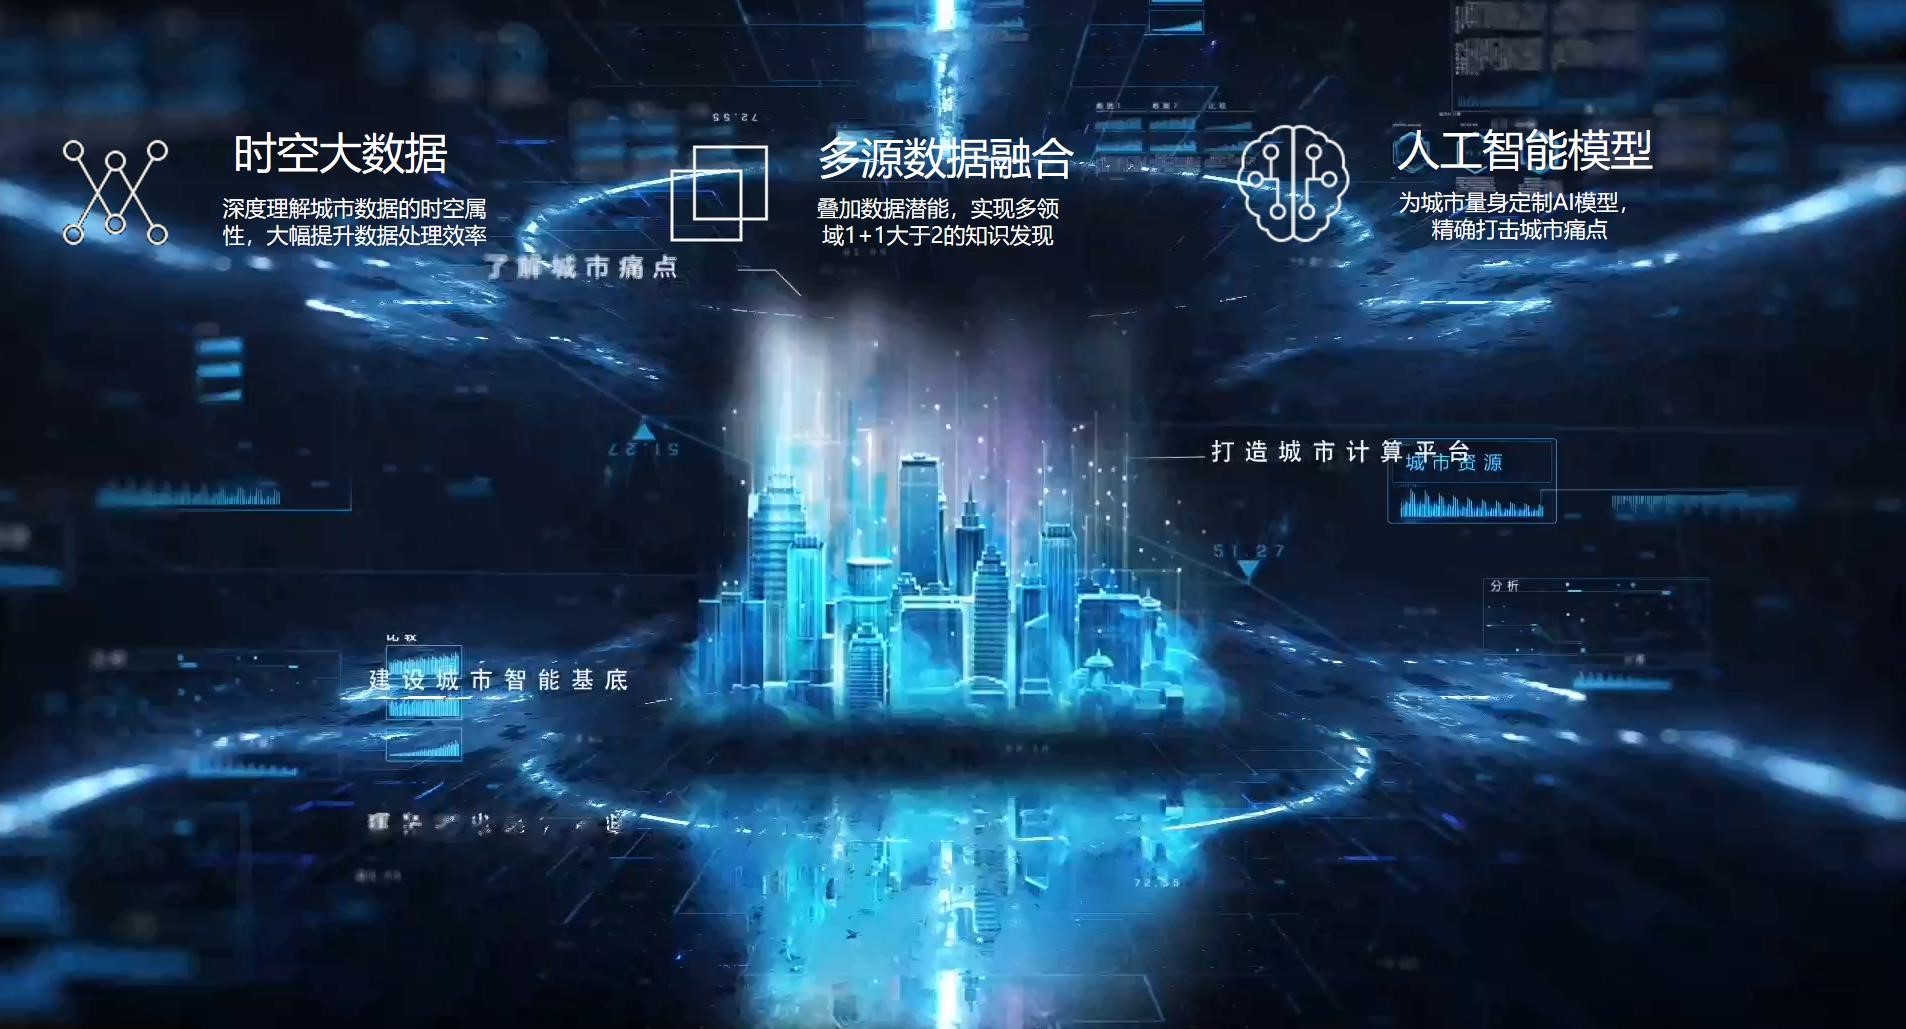 郑宇:京东数科“智能城市操作系统2.0”将成5G智能新城的技术底座